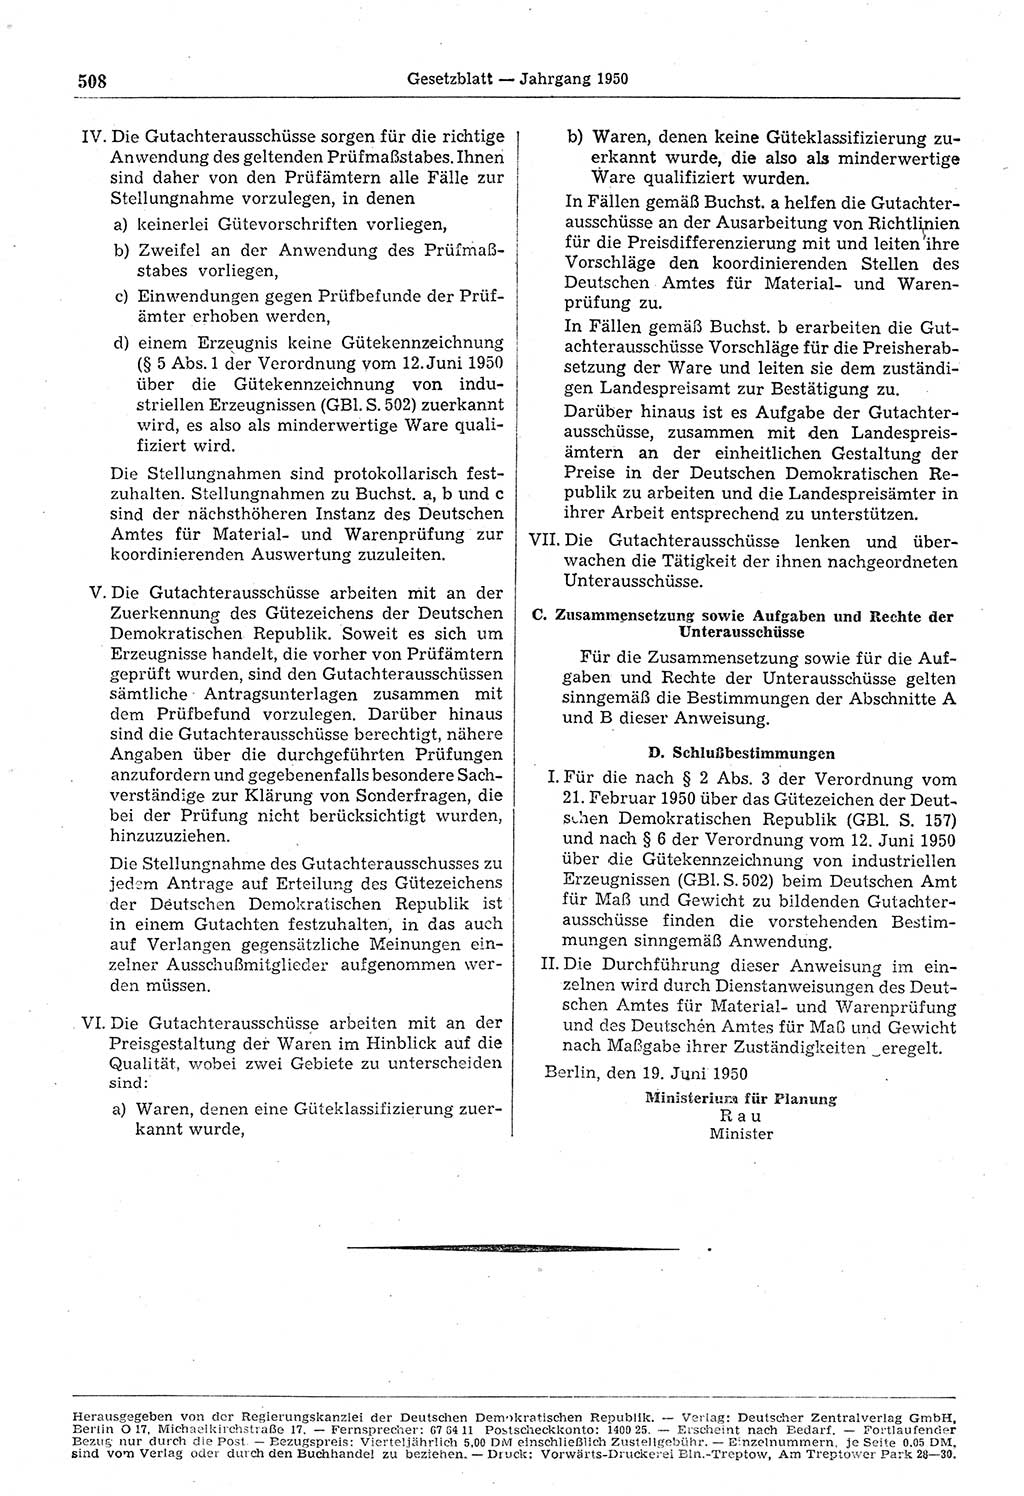 Gesetzblatt (GBl.) der Deutschen Demokratischen Republik (DDR) 1950, Seite 508 (GBl. DDR 1950, S. 508)